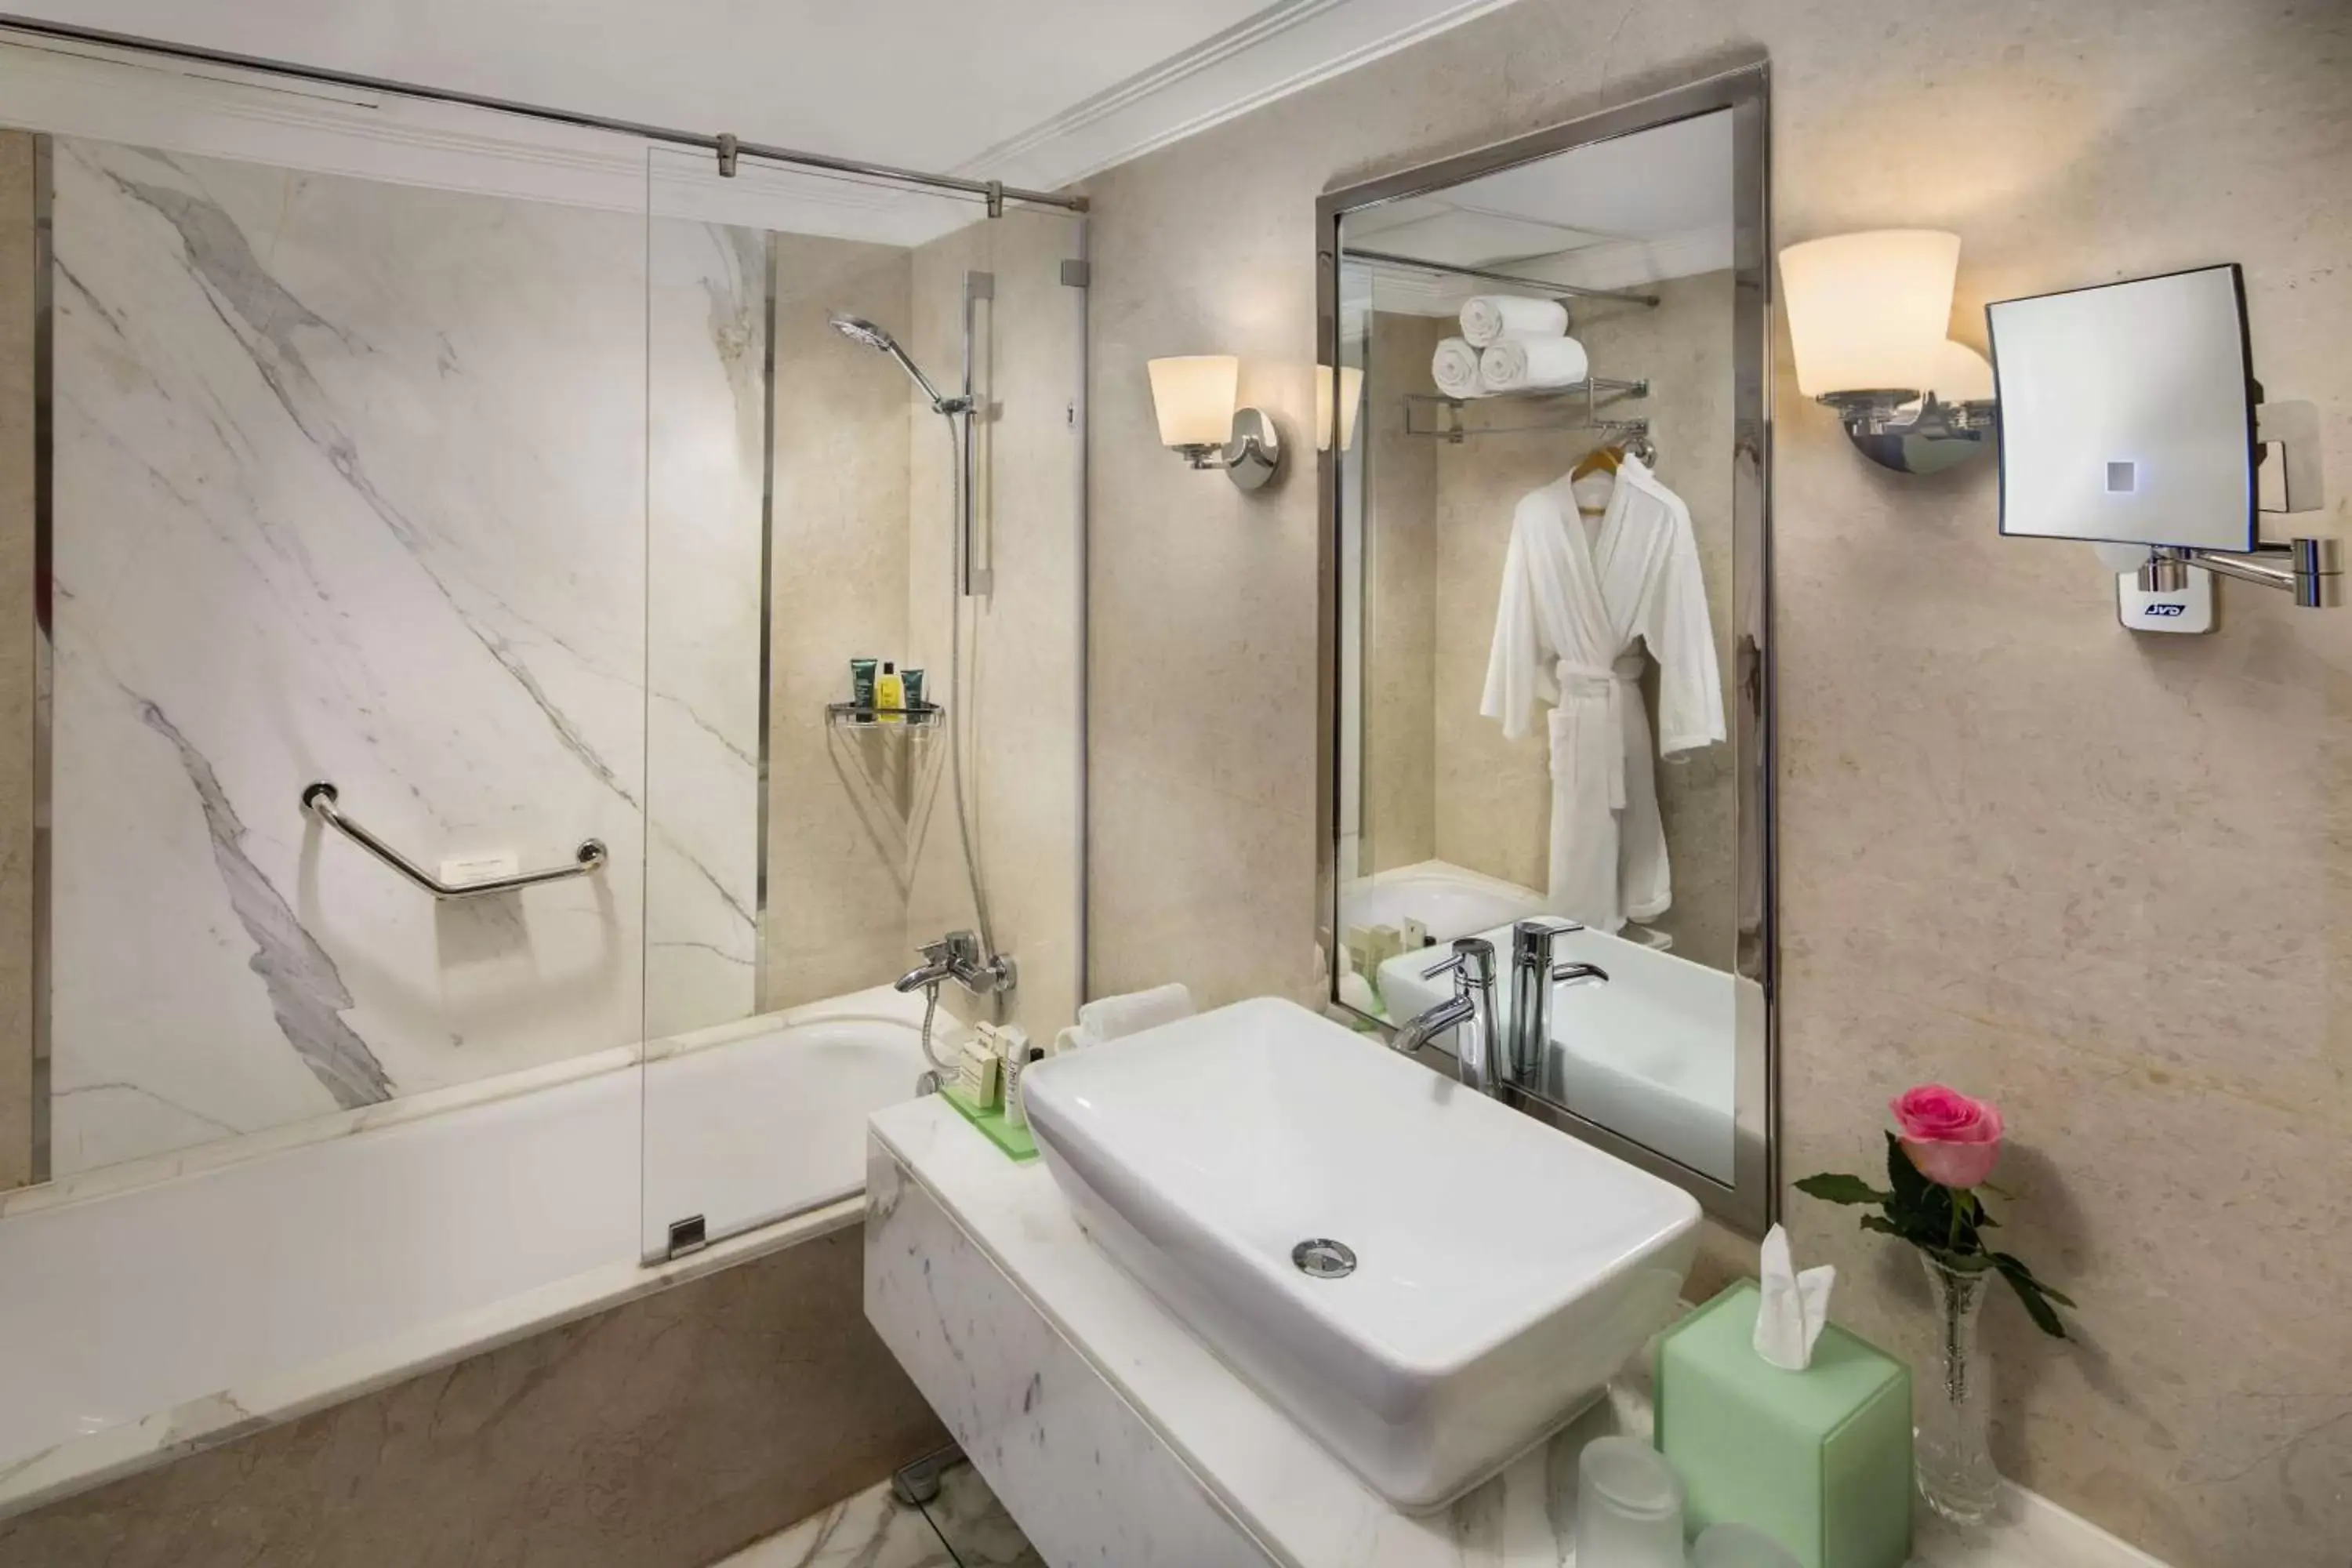 Toilet, Bathroom in Hilton Alexandria Corniche